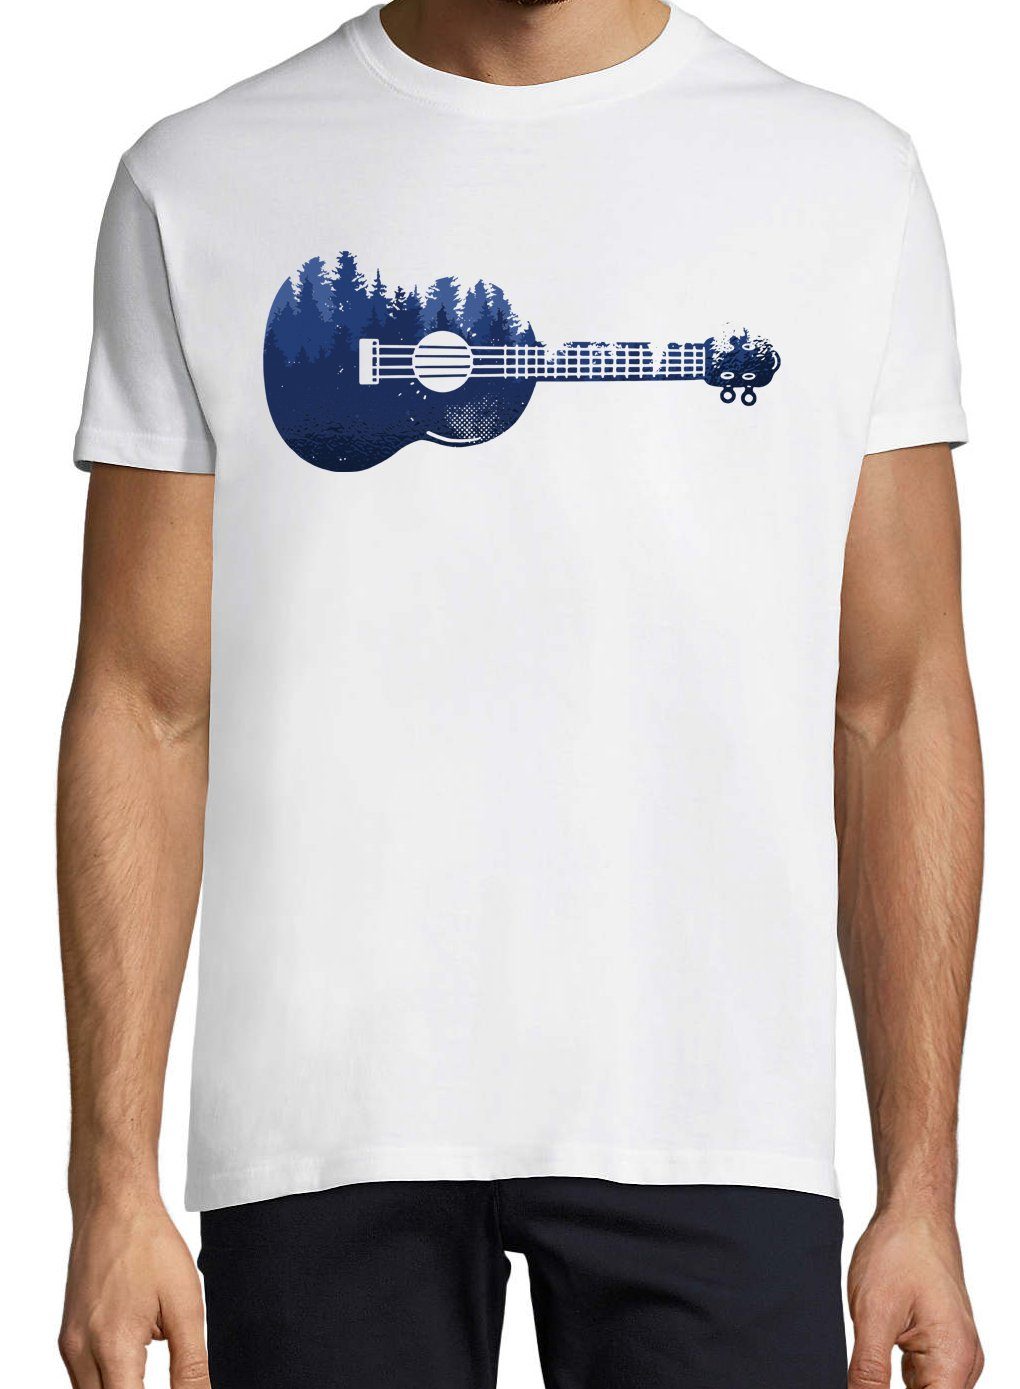 Designz Shirt T-Shirt Youth trendigem Waldmotiv mit Ukelele Herren Weiß Frontprint